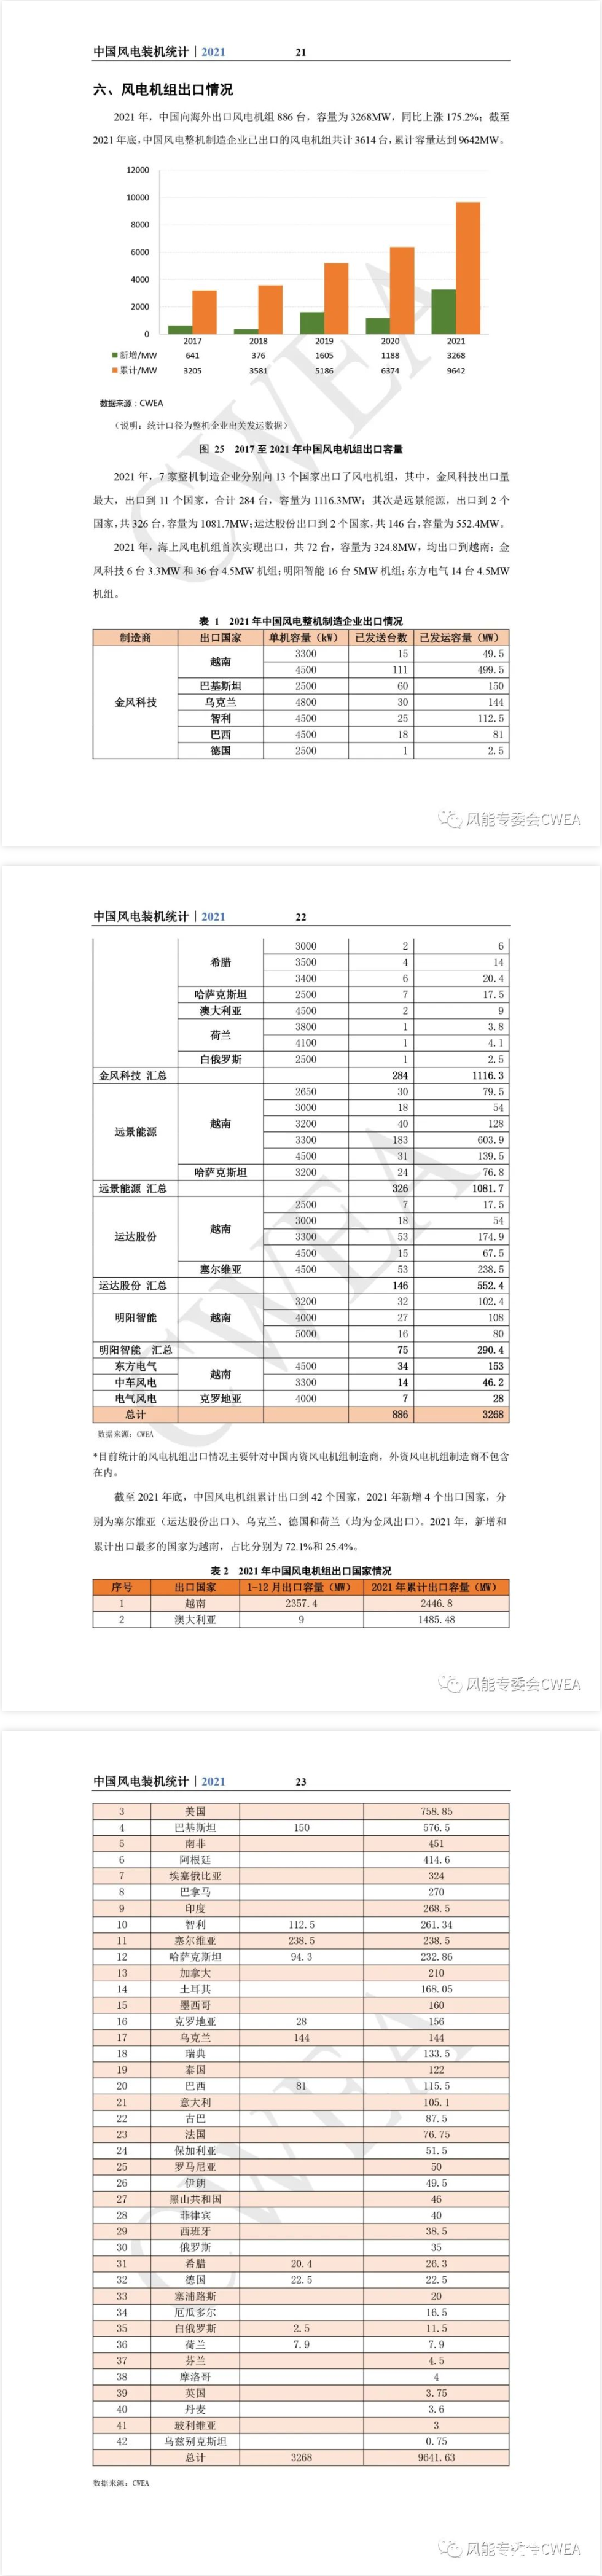 2021年中国风电整机商吊装排名：金风、远景、明阳、运达、电气风电等在列！